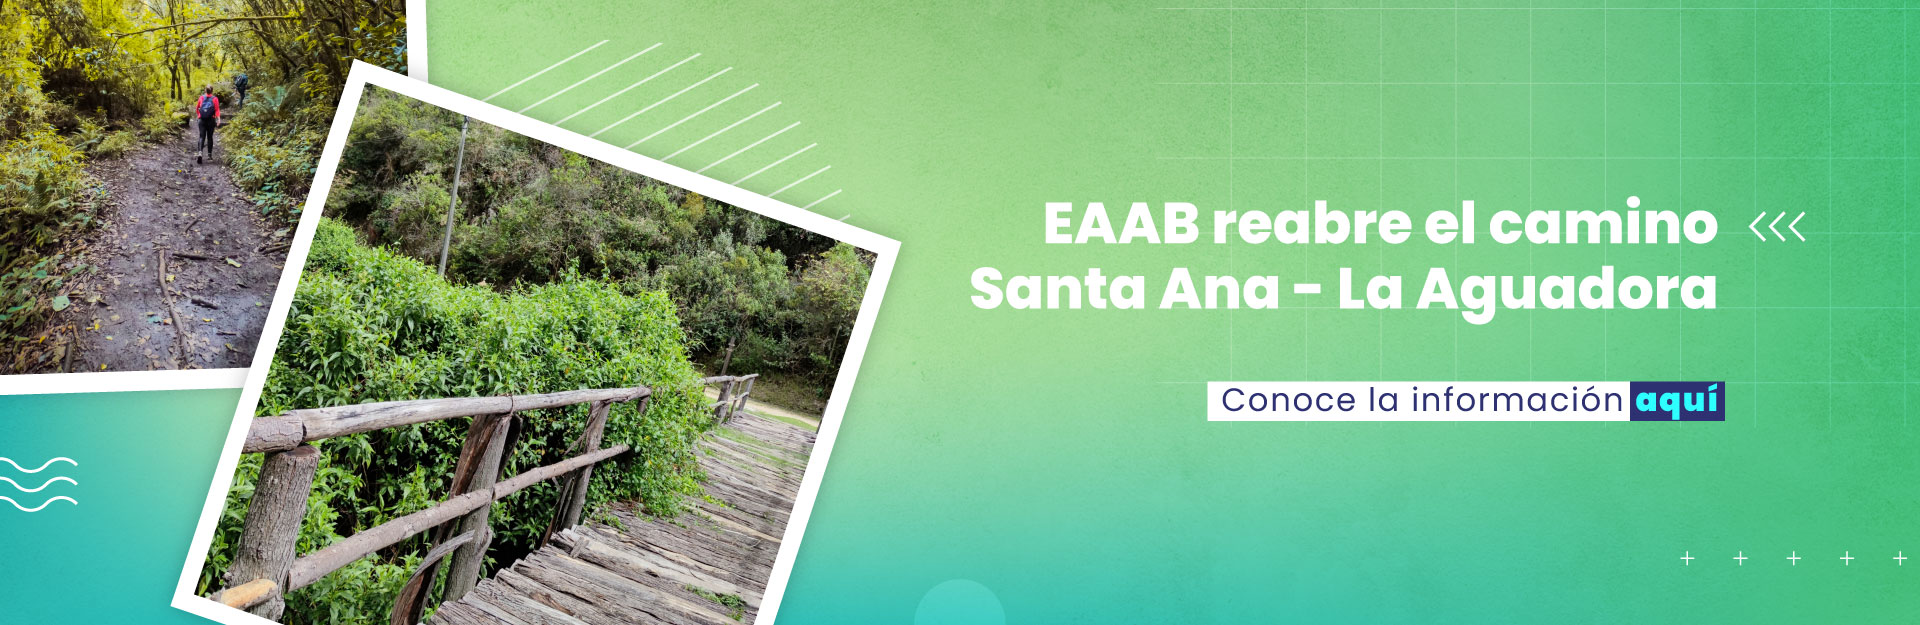 EAAB reabre el camino Santa Ana – La Aguadora